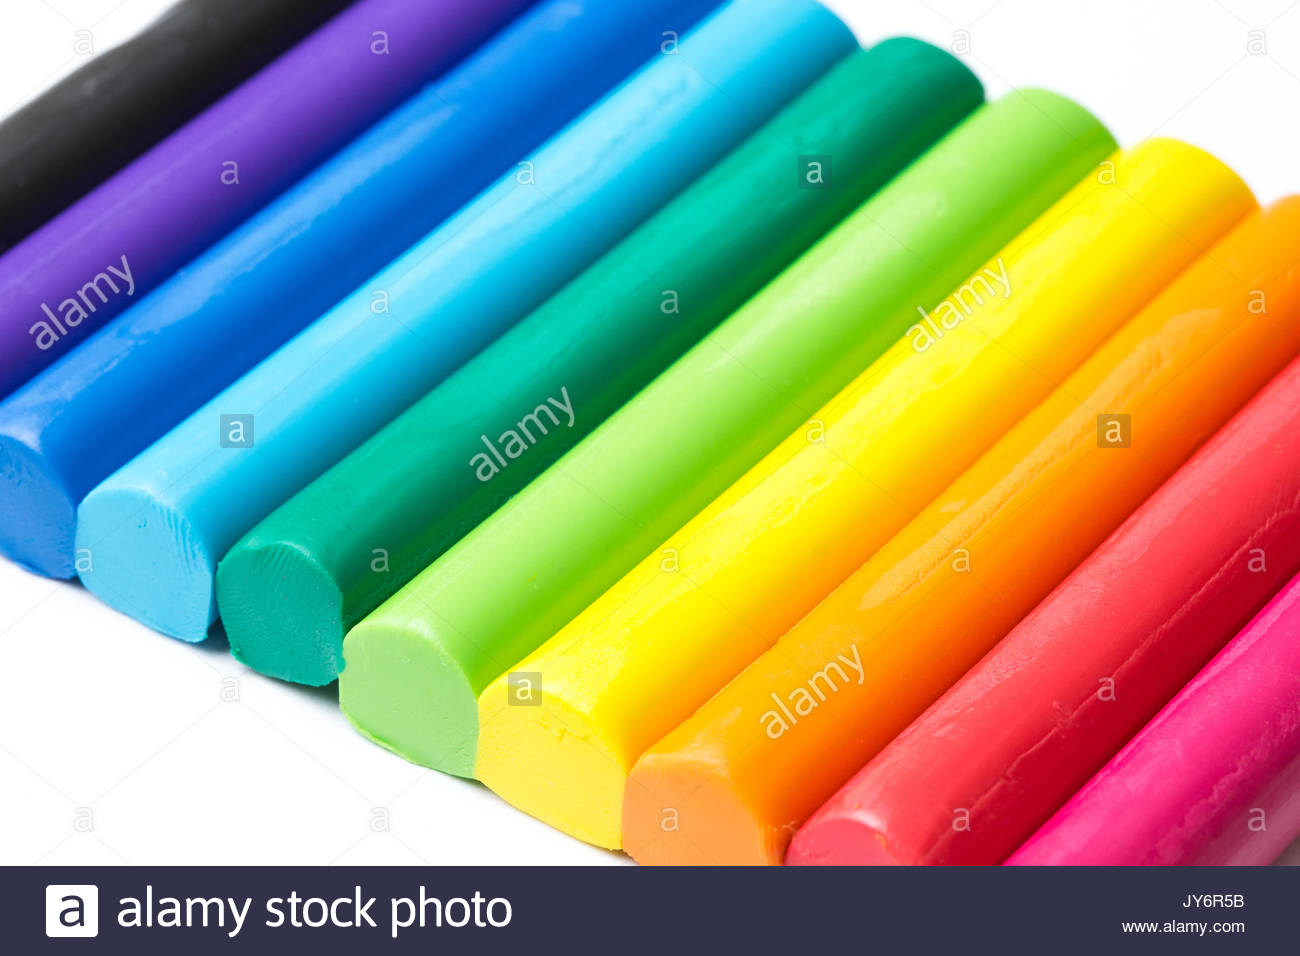 Colorful Play Dough Stock Photos